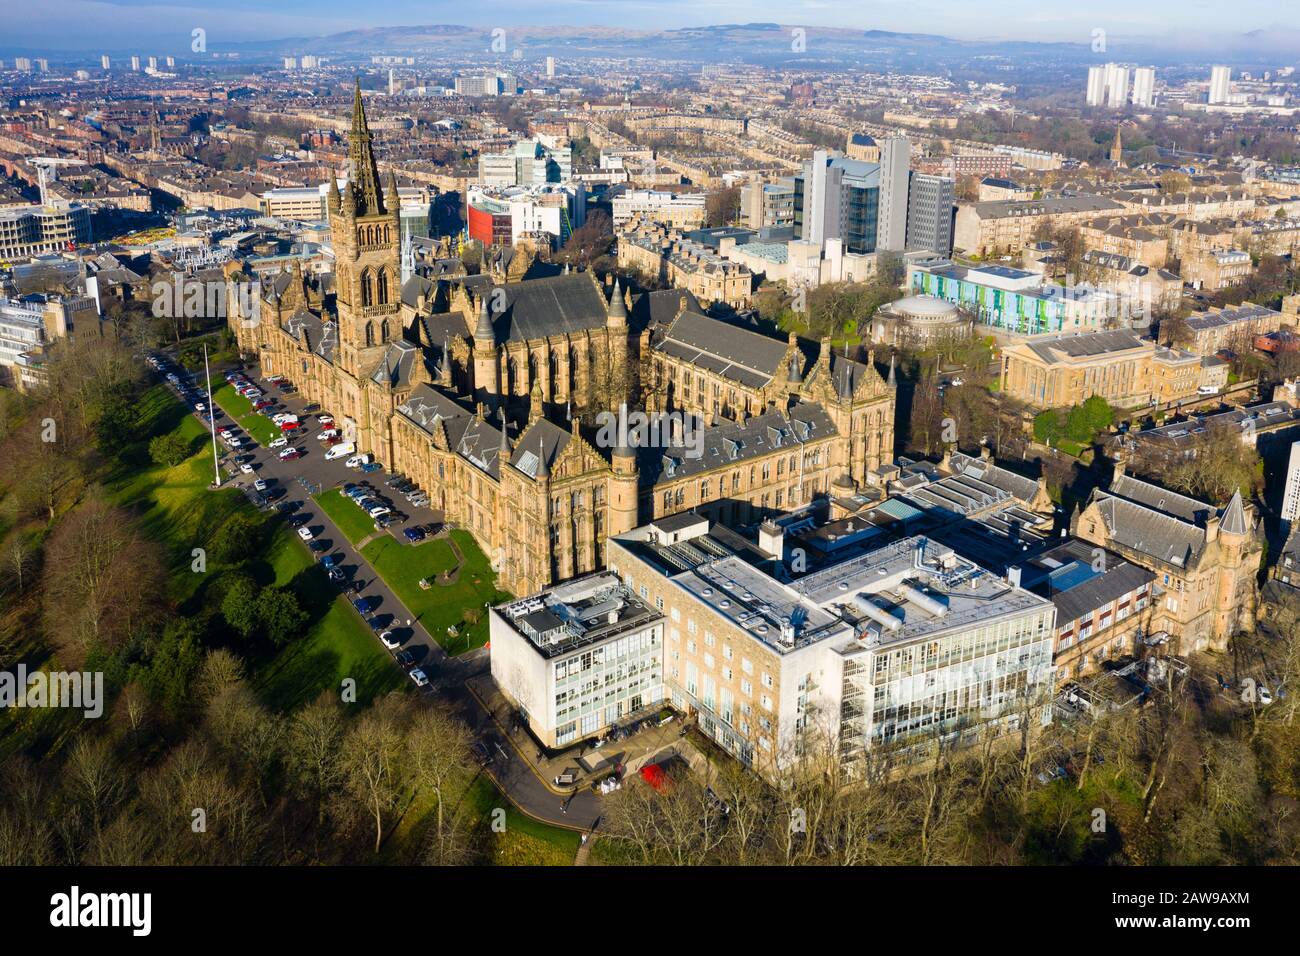 Vue aérienne des bâtiments gothiques de l'Université de Glasgow, Ecosse, Royaume-Uni Banque D'Images